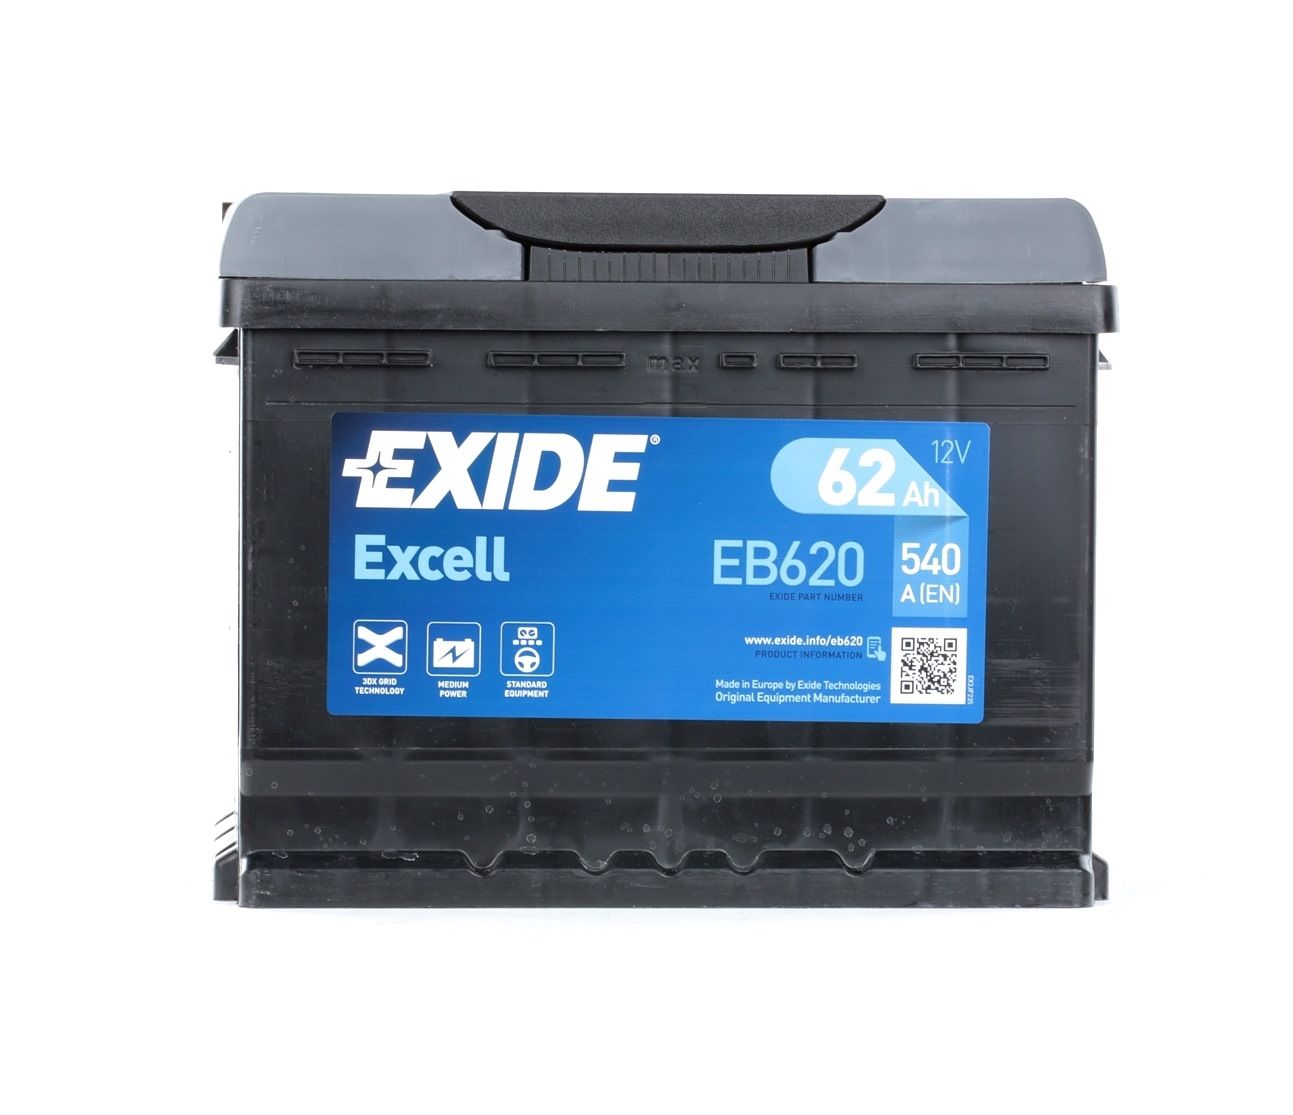 555 59 EXIDE EXCELL EB620 JAGUAR Starterbatterie Kosten und Erfahrung